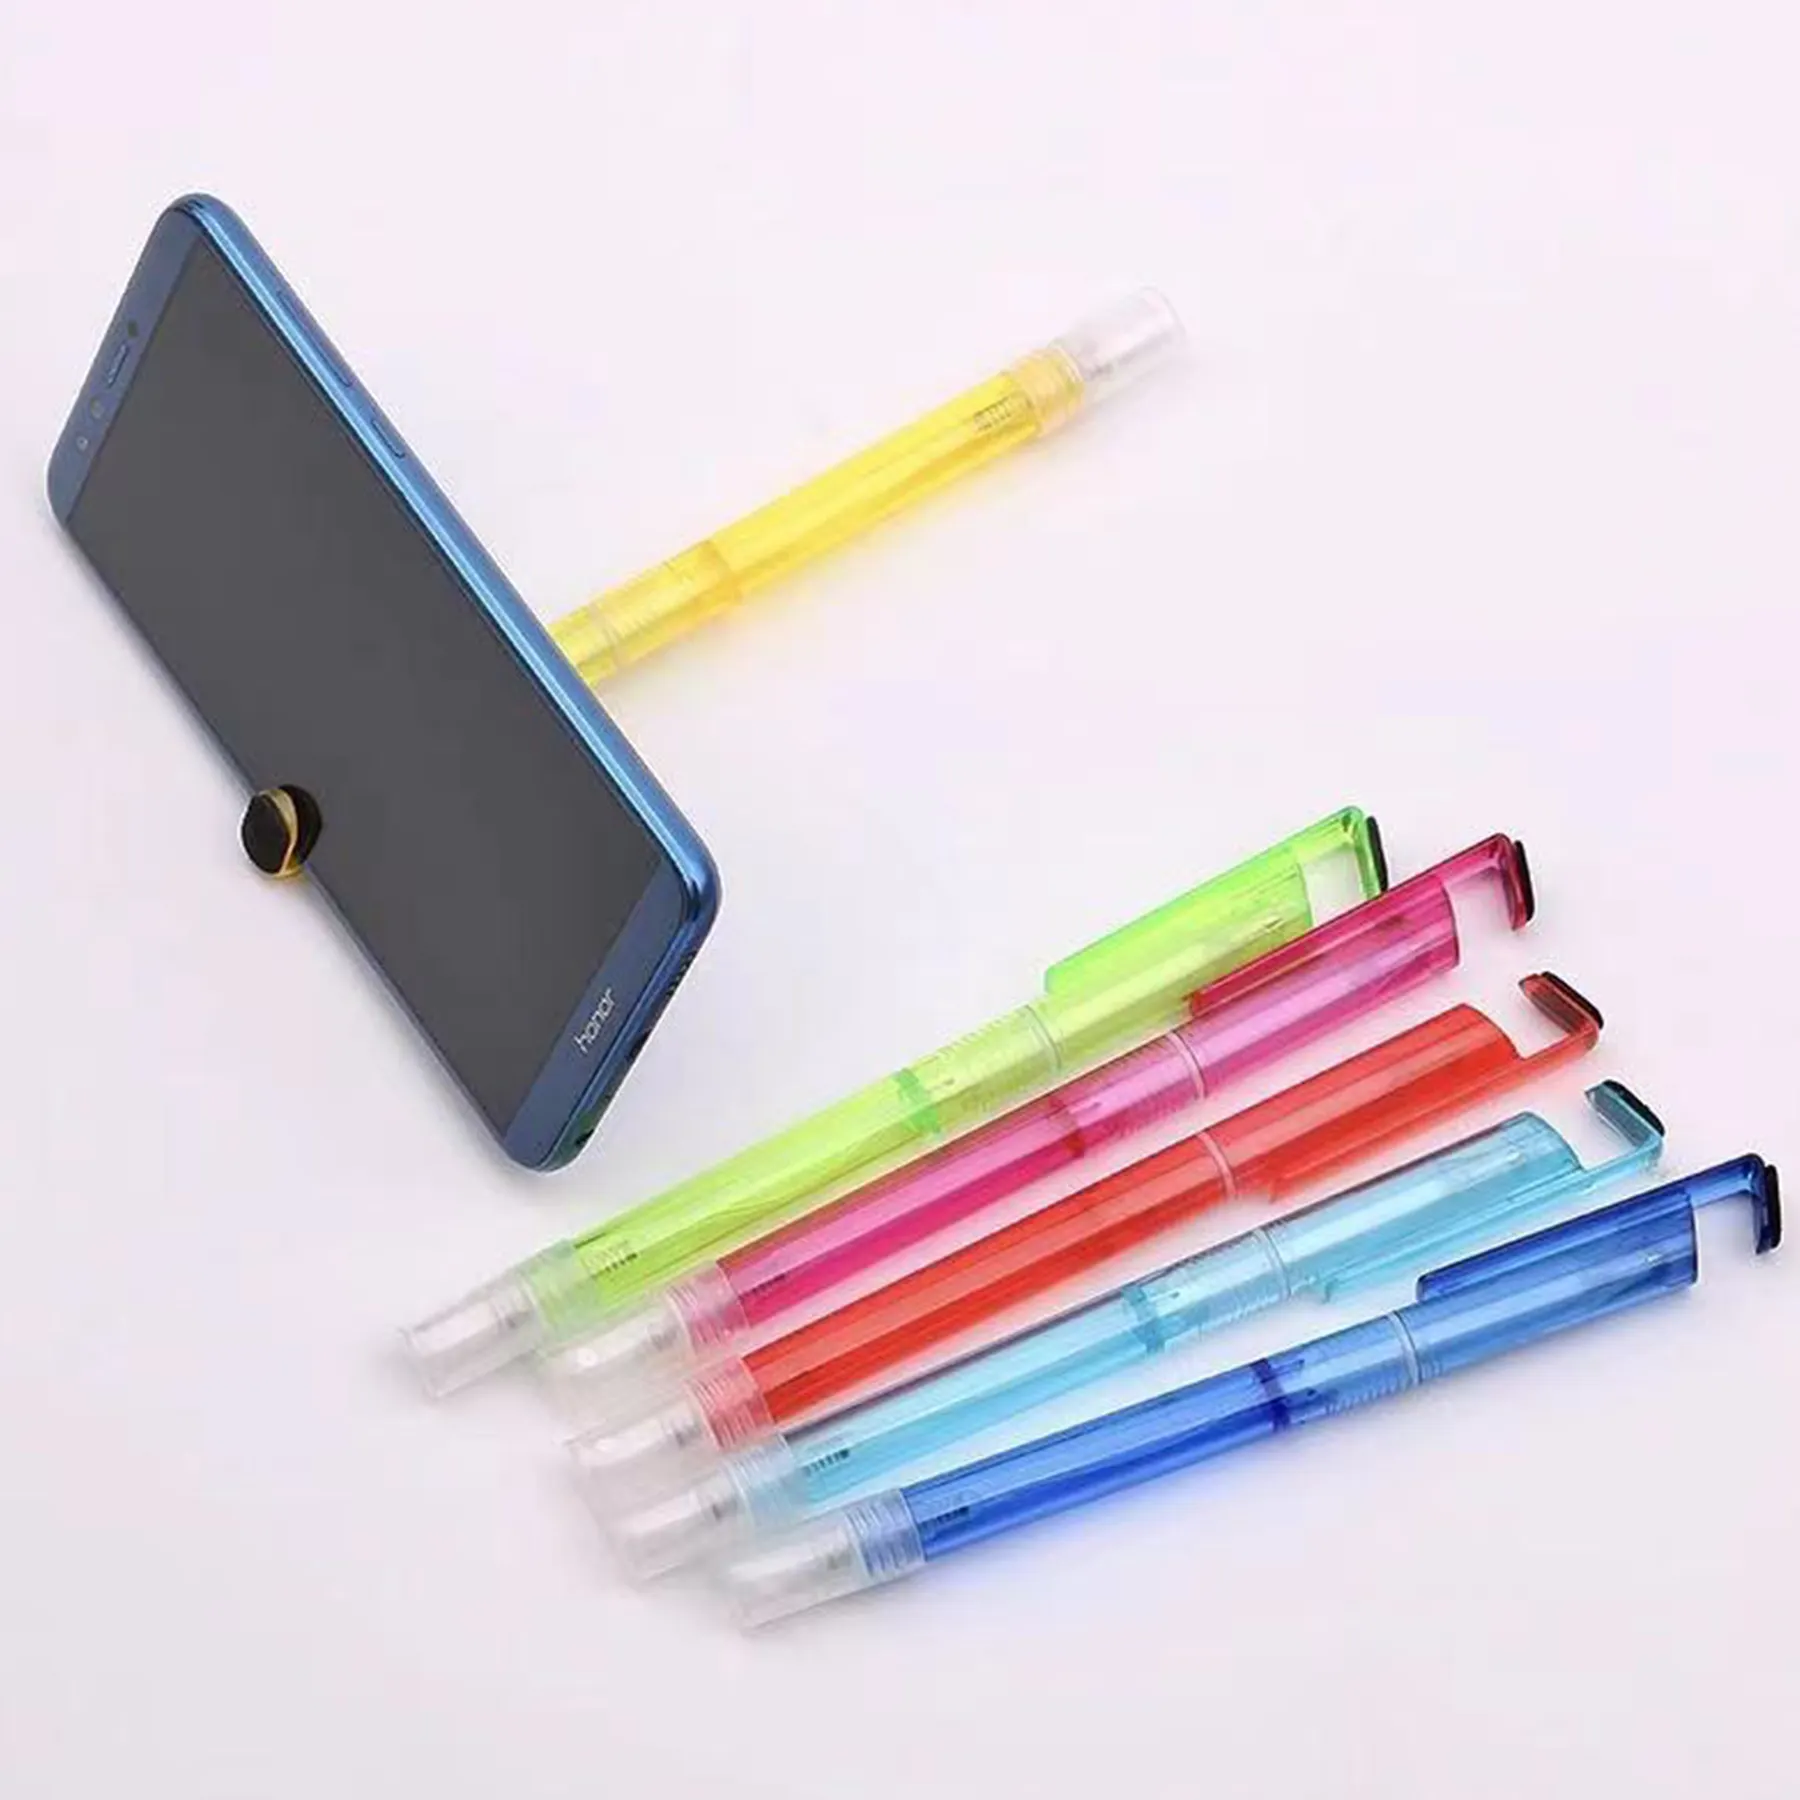 3-In-1 Gel Inkt Pen Lege Mist Spray Fles En Mobiele Telefoon Houder Praktische Kantoor School Art tekening Multi Functie Pen